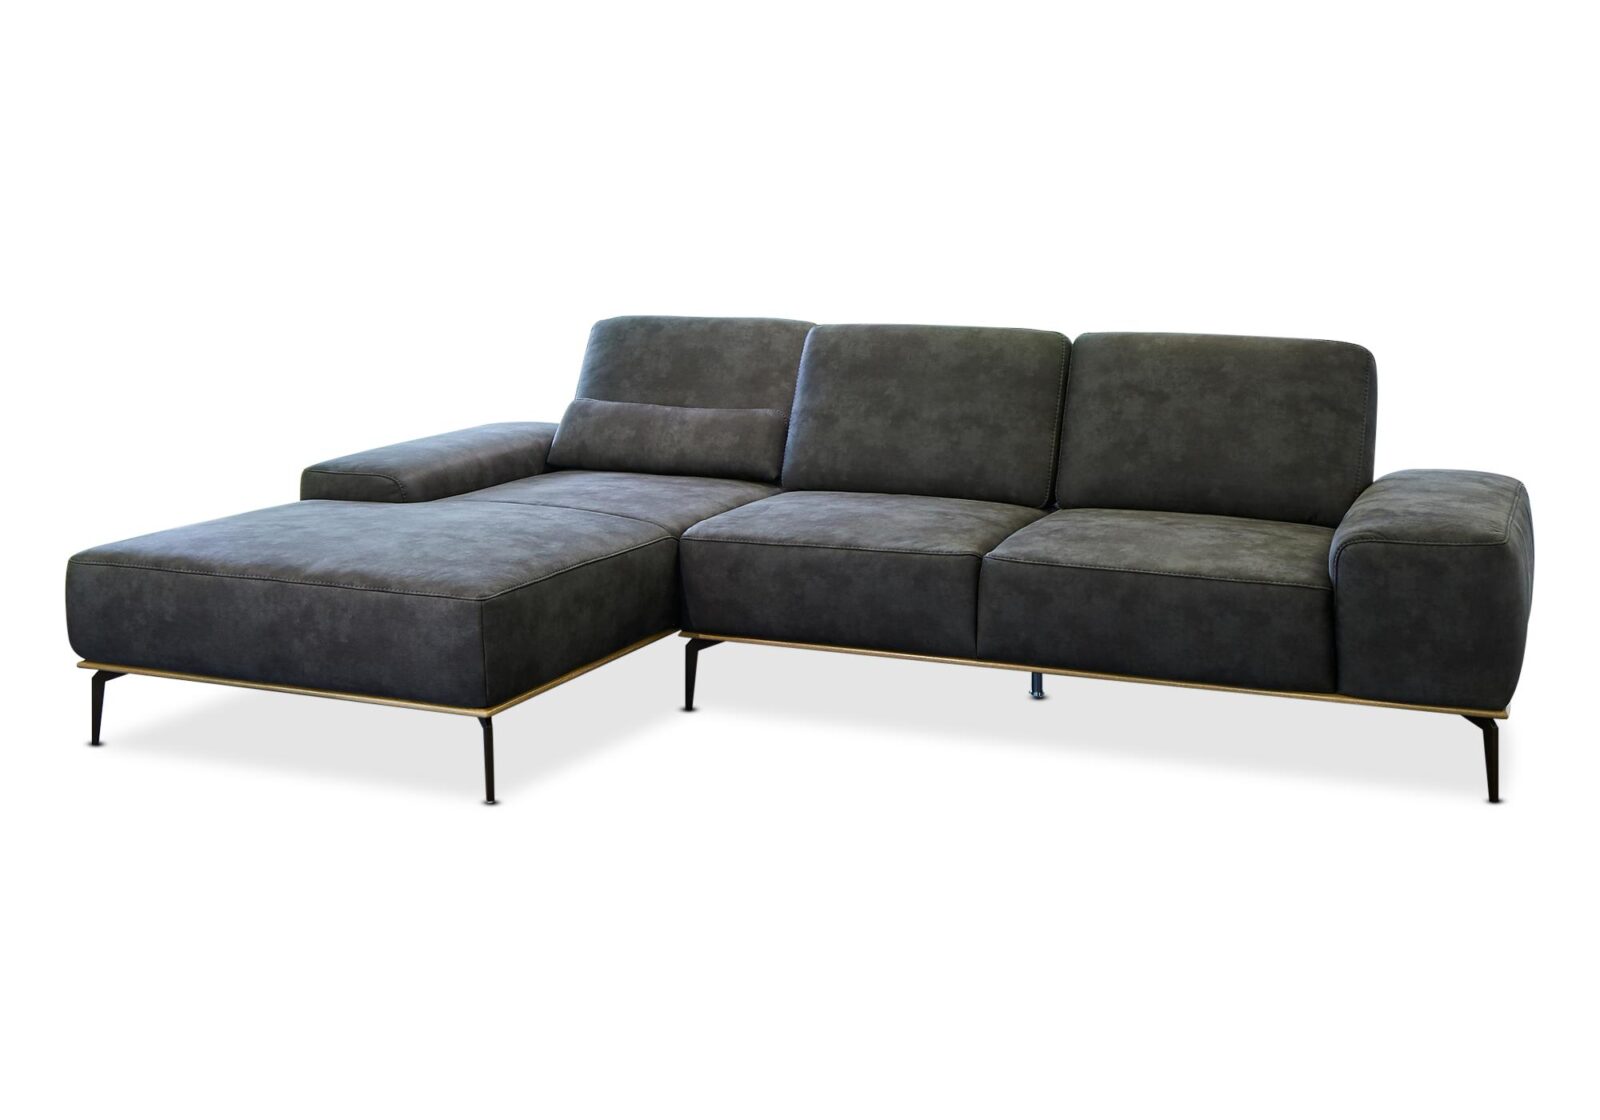 Sofa mit Liege Alpin mit . Bezug: Stoff. Farbe: Mocca. Erhältlich bei Möbel Gallati.